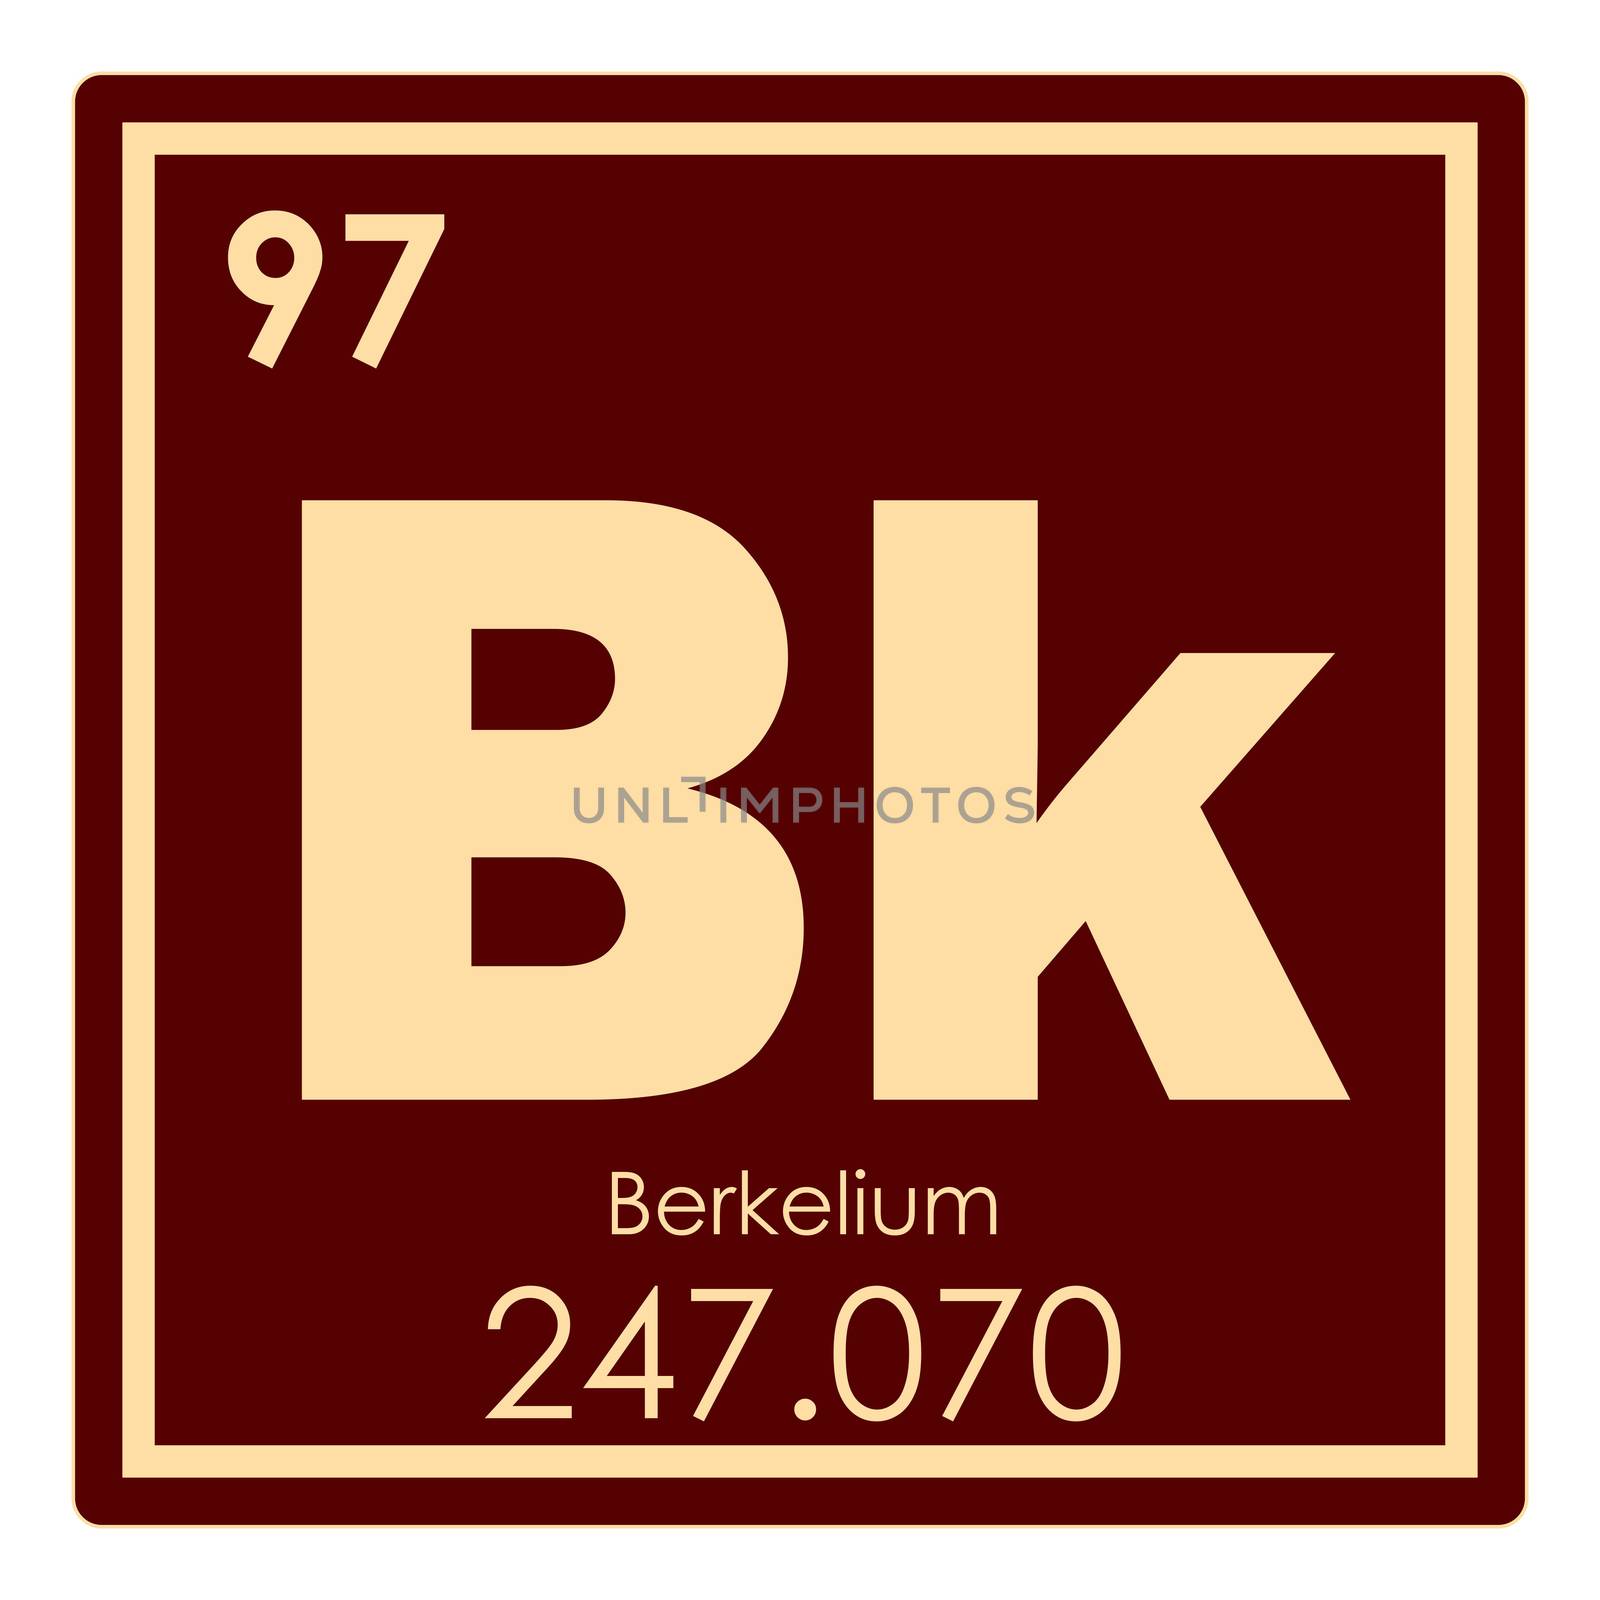 Berkelium chemical element periodic table science symbol